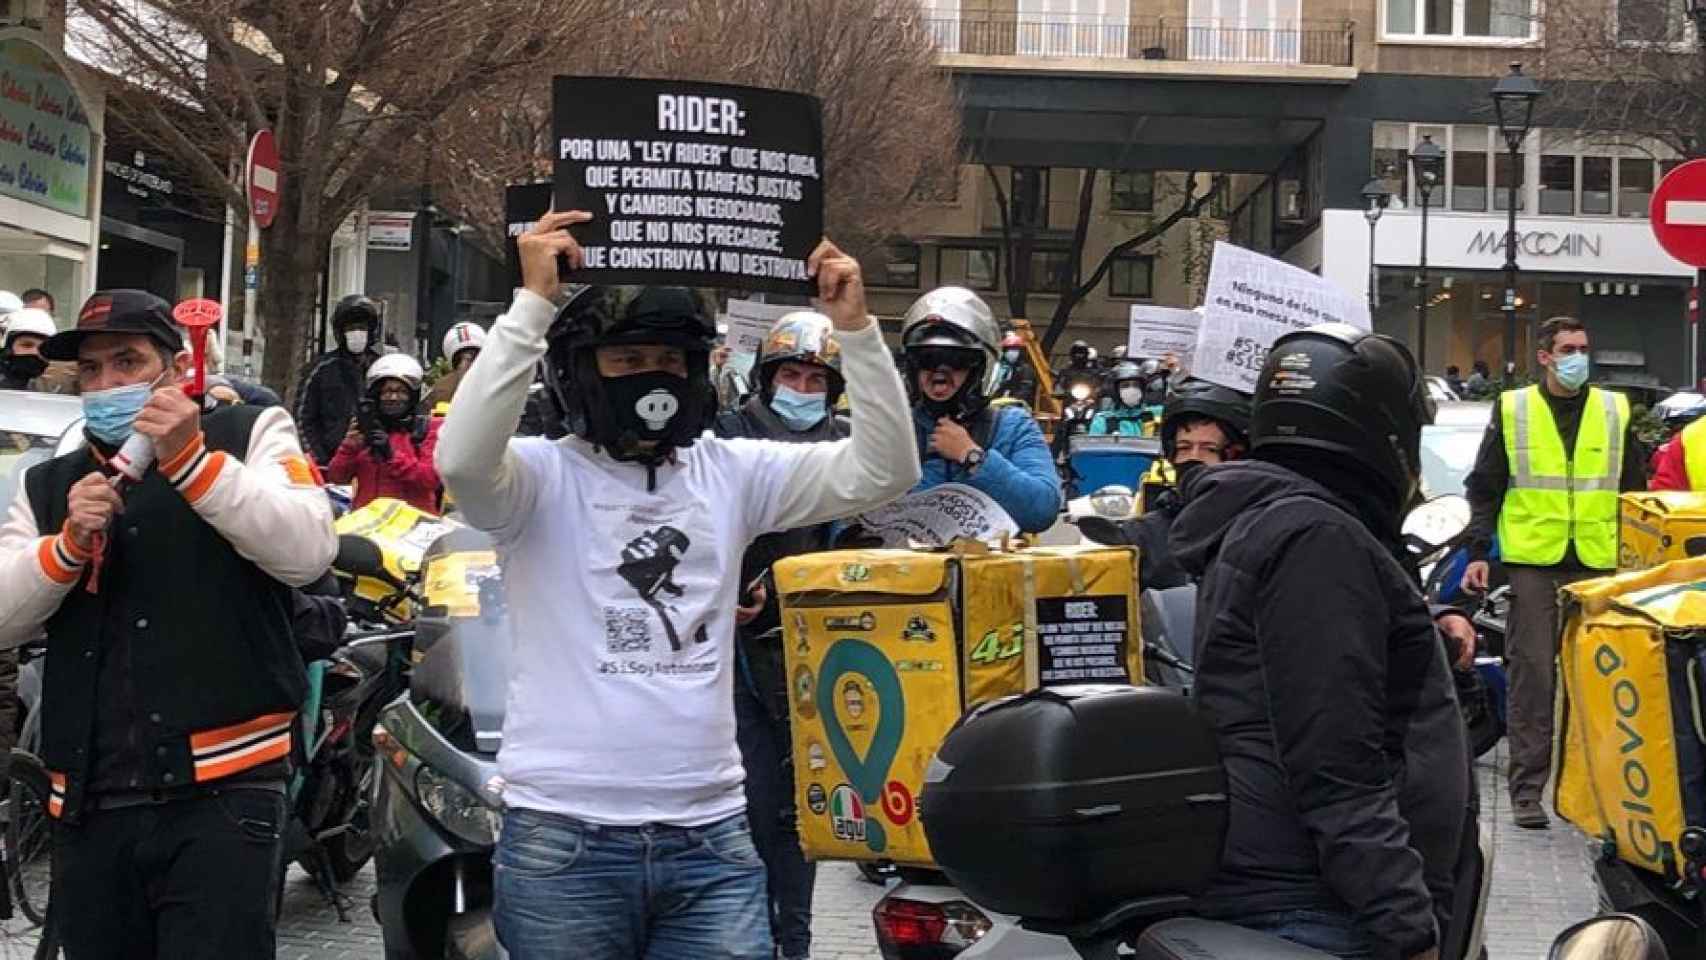 Protesta de los 'riders' este jueves, en una imagen tomada en Madrid.